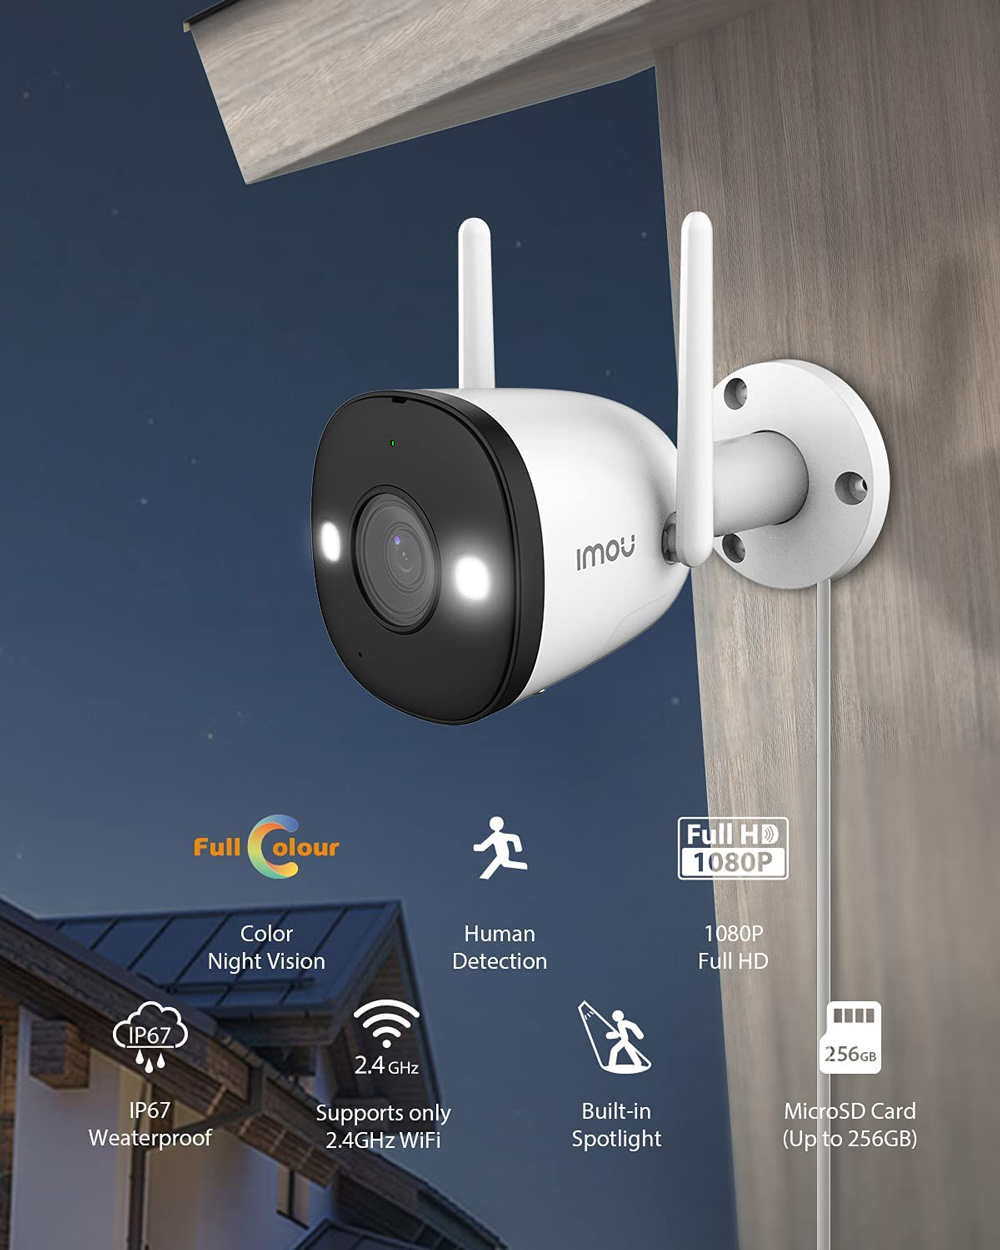 Dahua IMOU Bullet 2E WiFi Наружная камера безопасности, 1080P FHD, цветное ночное видение, световая активная защита, IP67 Устойчивый к погодным условиям монитор безопасности домашней компании - белый